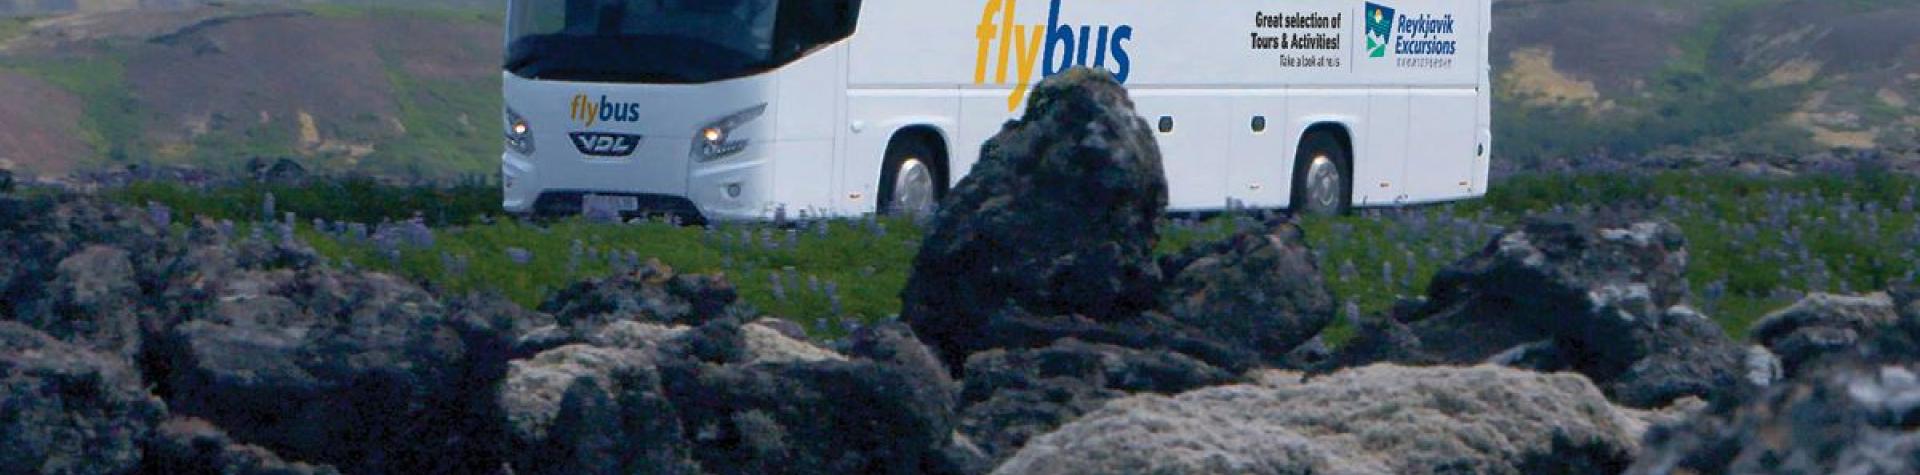 Flybuss, Hotell i Reykjavik - Keflavik flyplass (AB61)